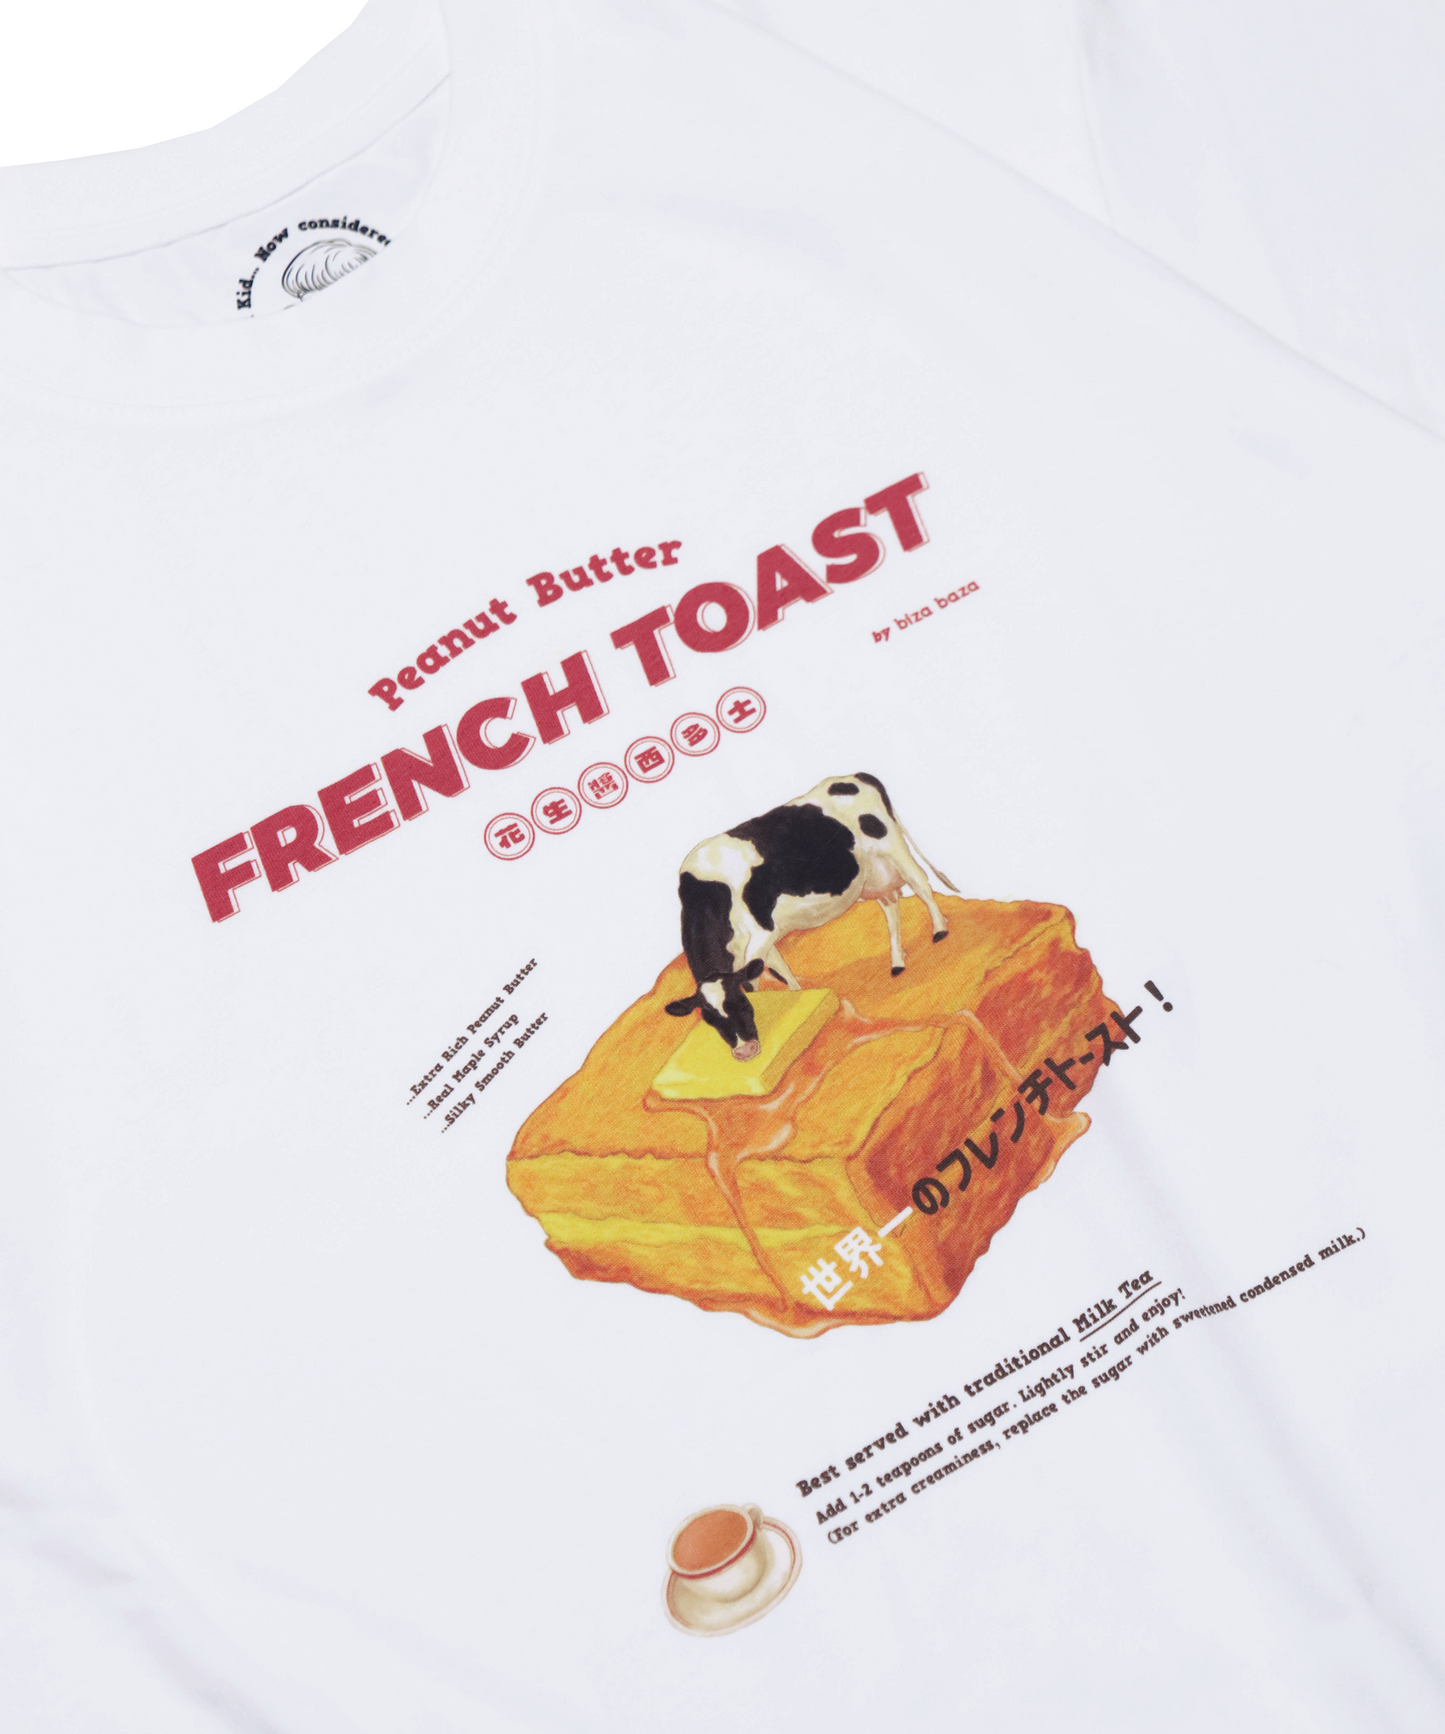 ピーナッツバターのフレンチトースト レトロTシャツシリーズ